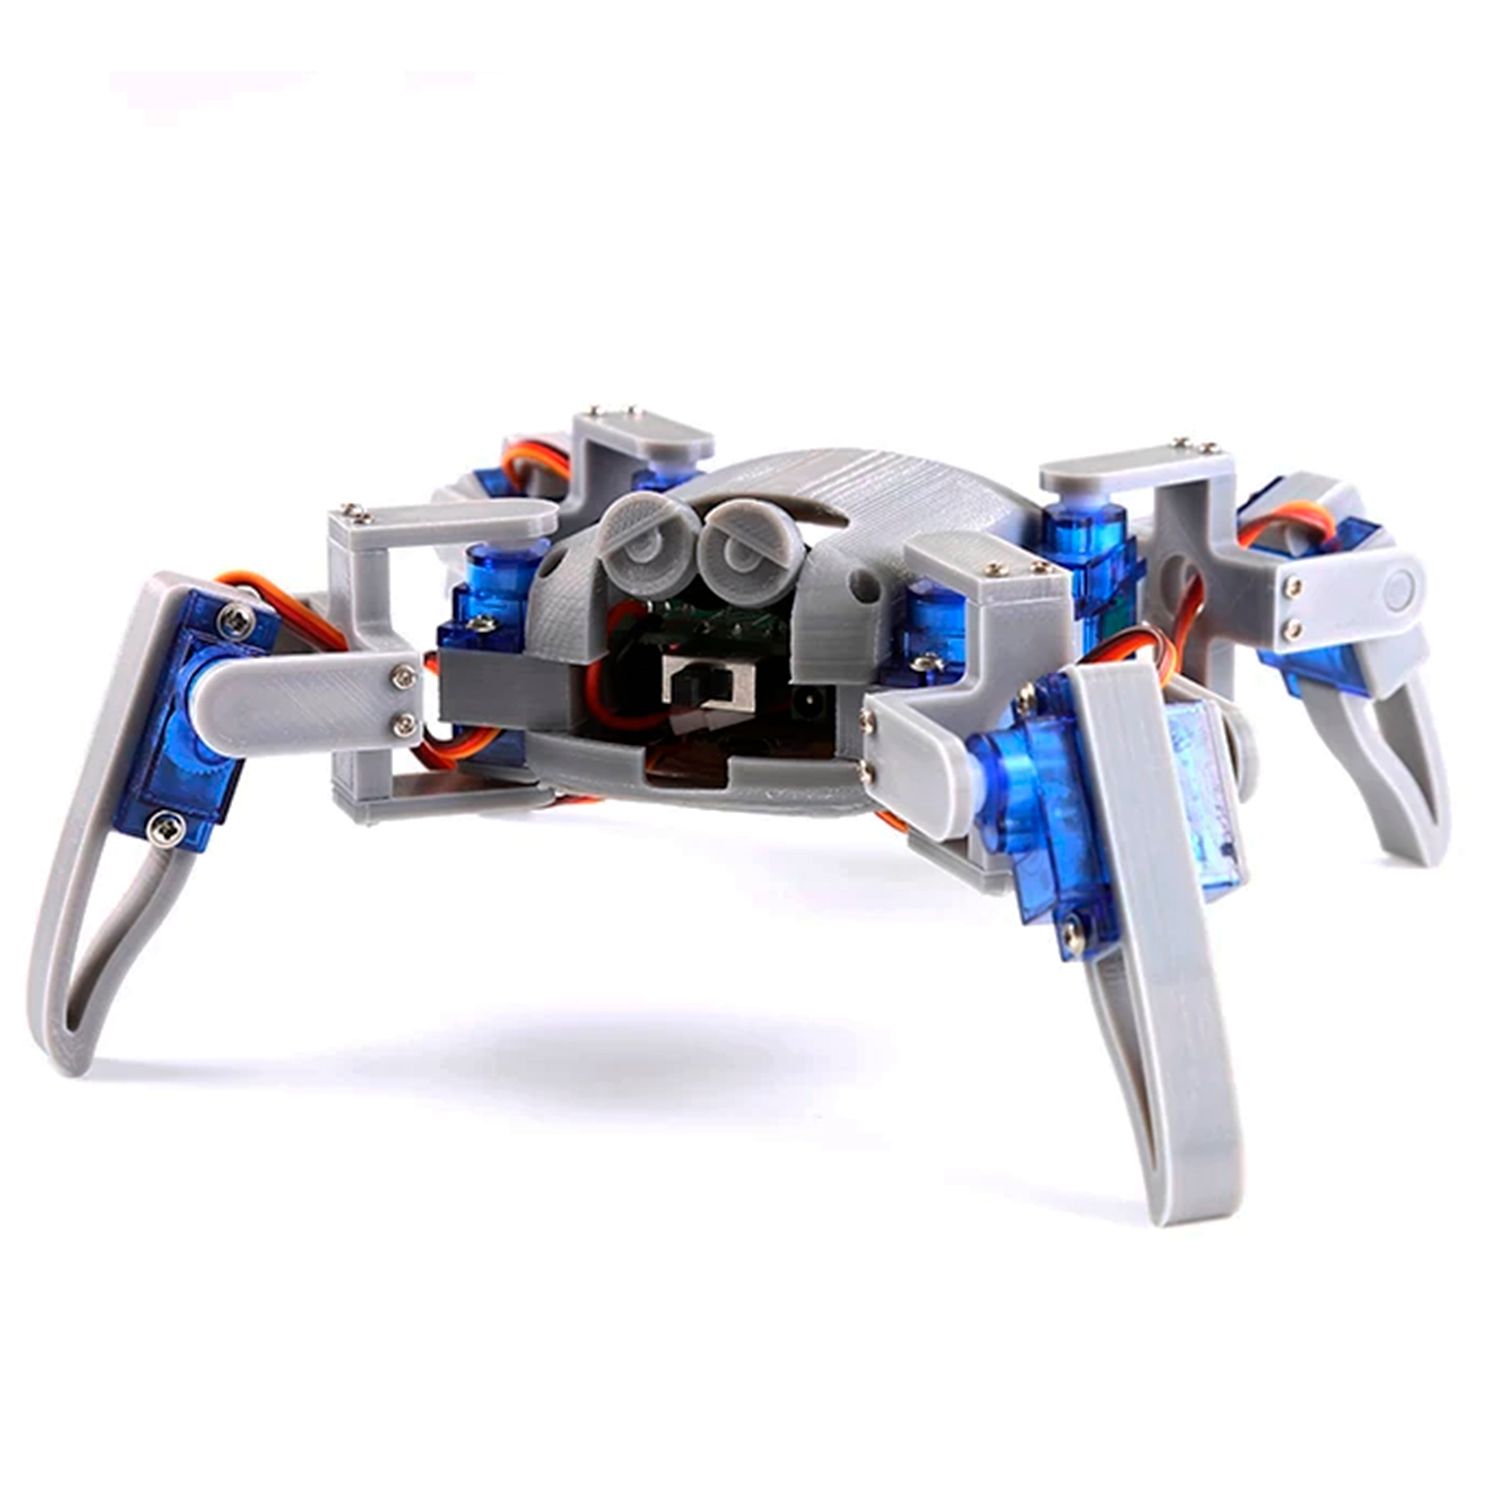 Робот павук ESP8266, NodeMCU